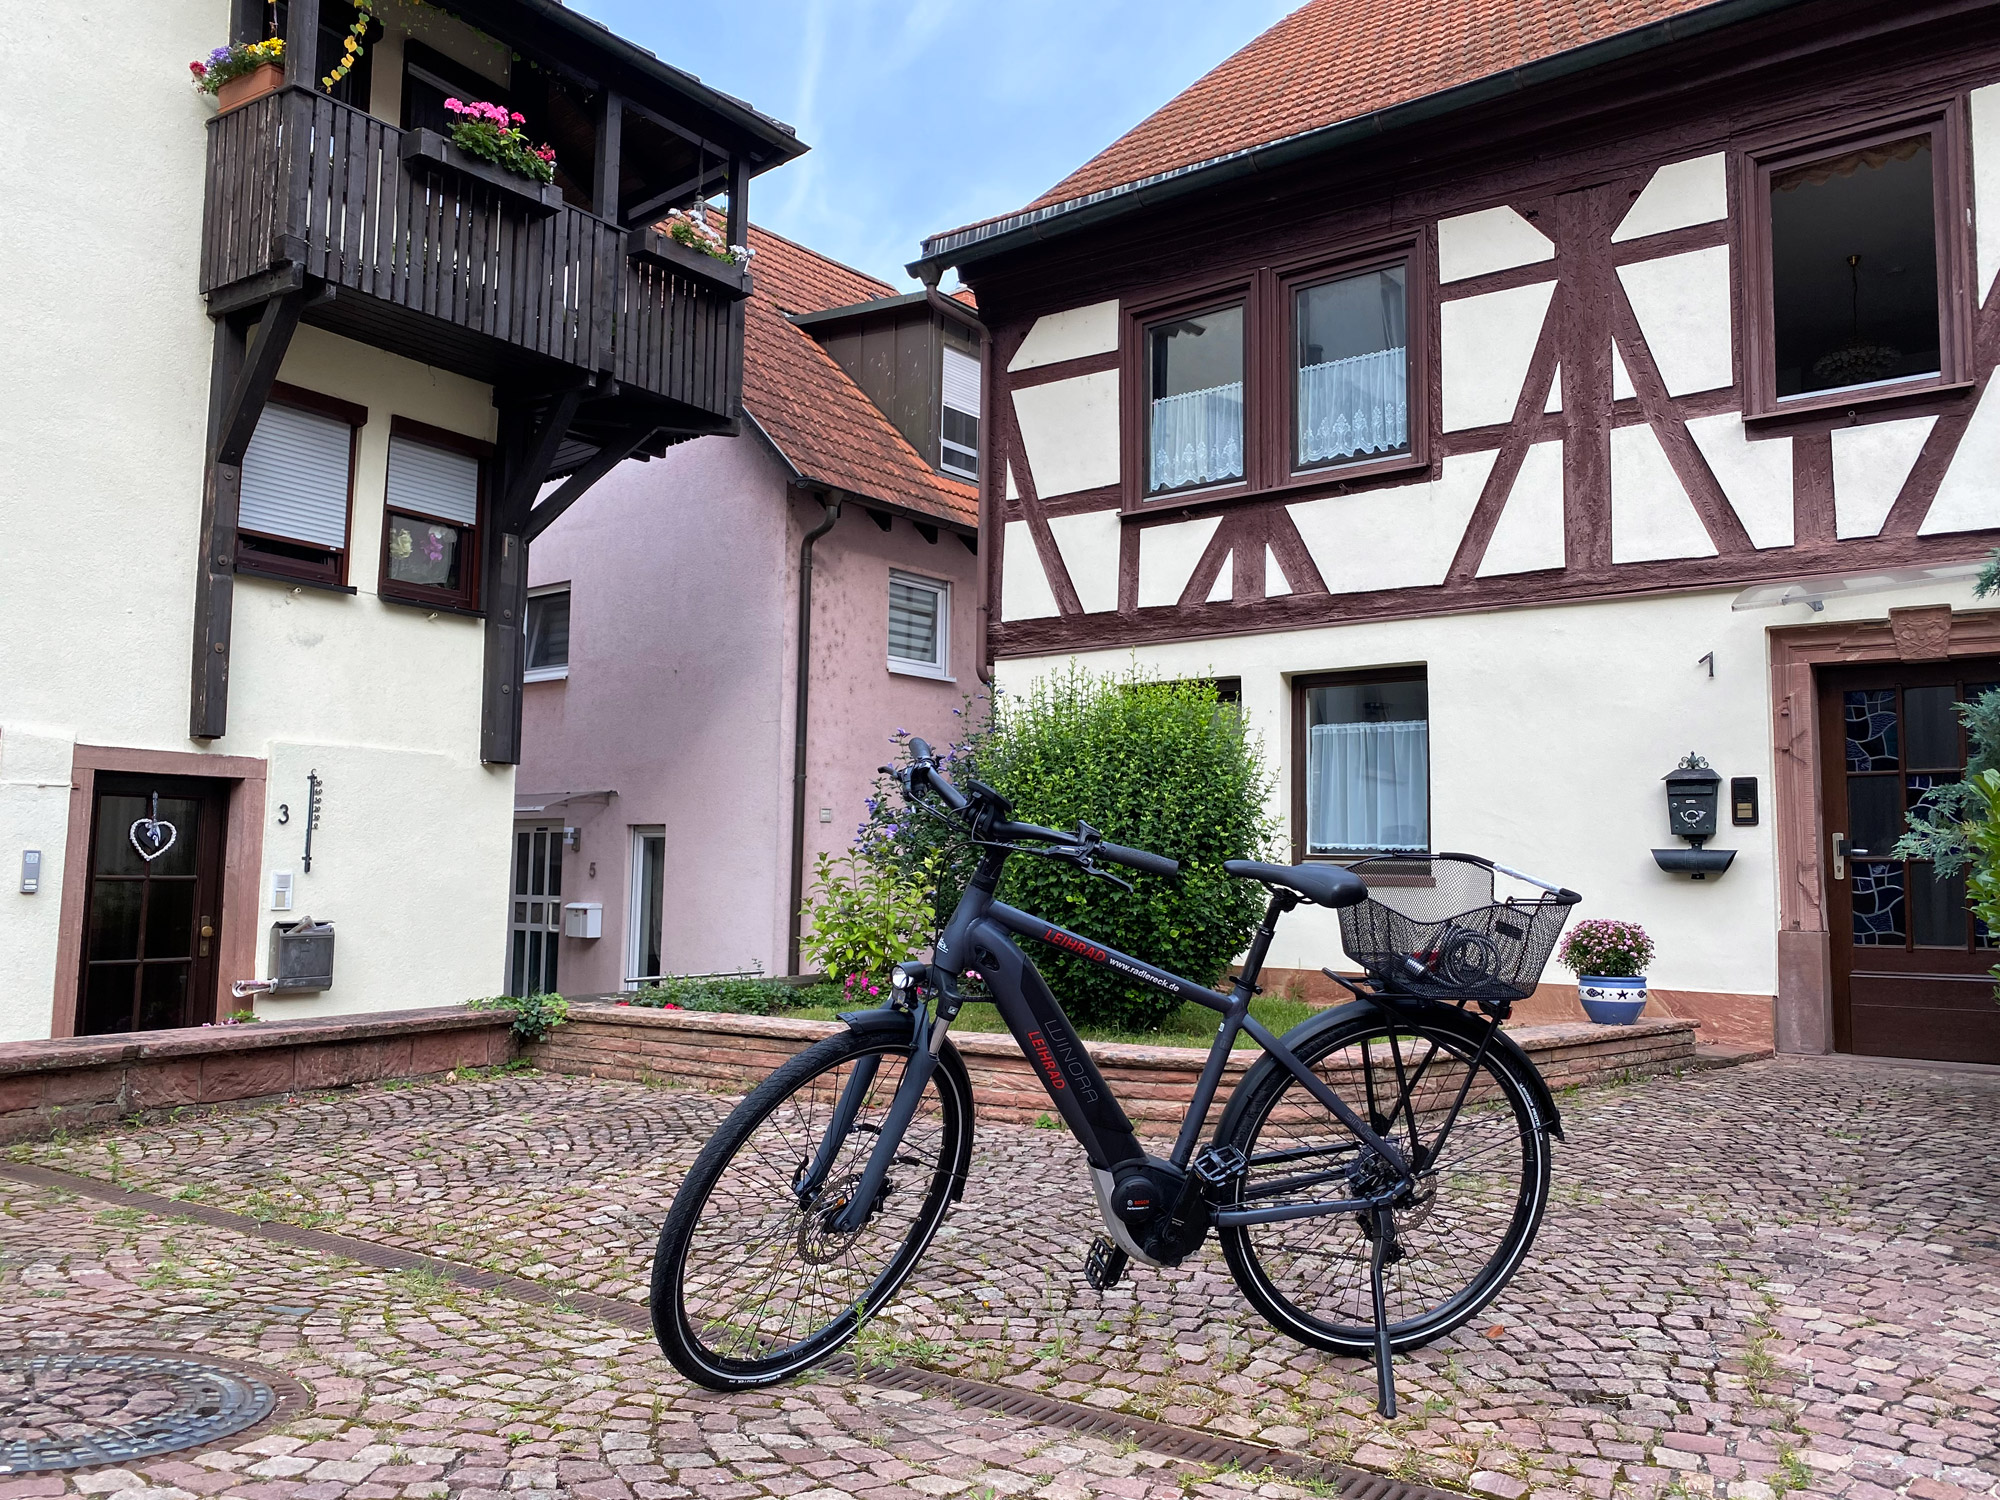 Churfranken - Met de fiets de regio verkennen